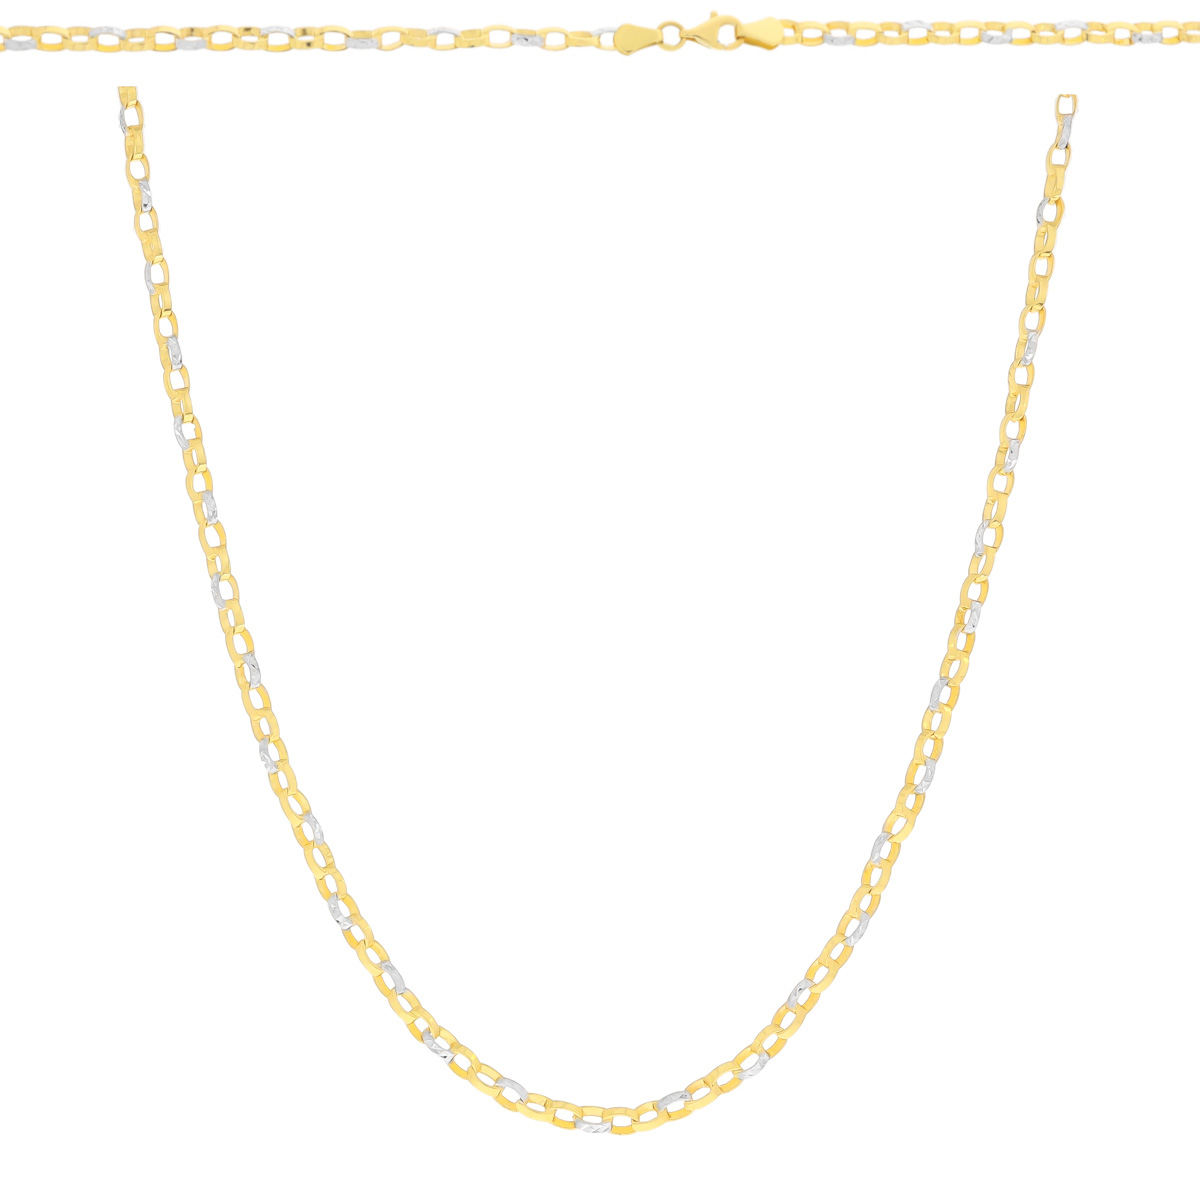 Złoty łańcuszek kółeczkowy 45 cm dwa kolory złota pr. 585